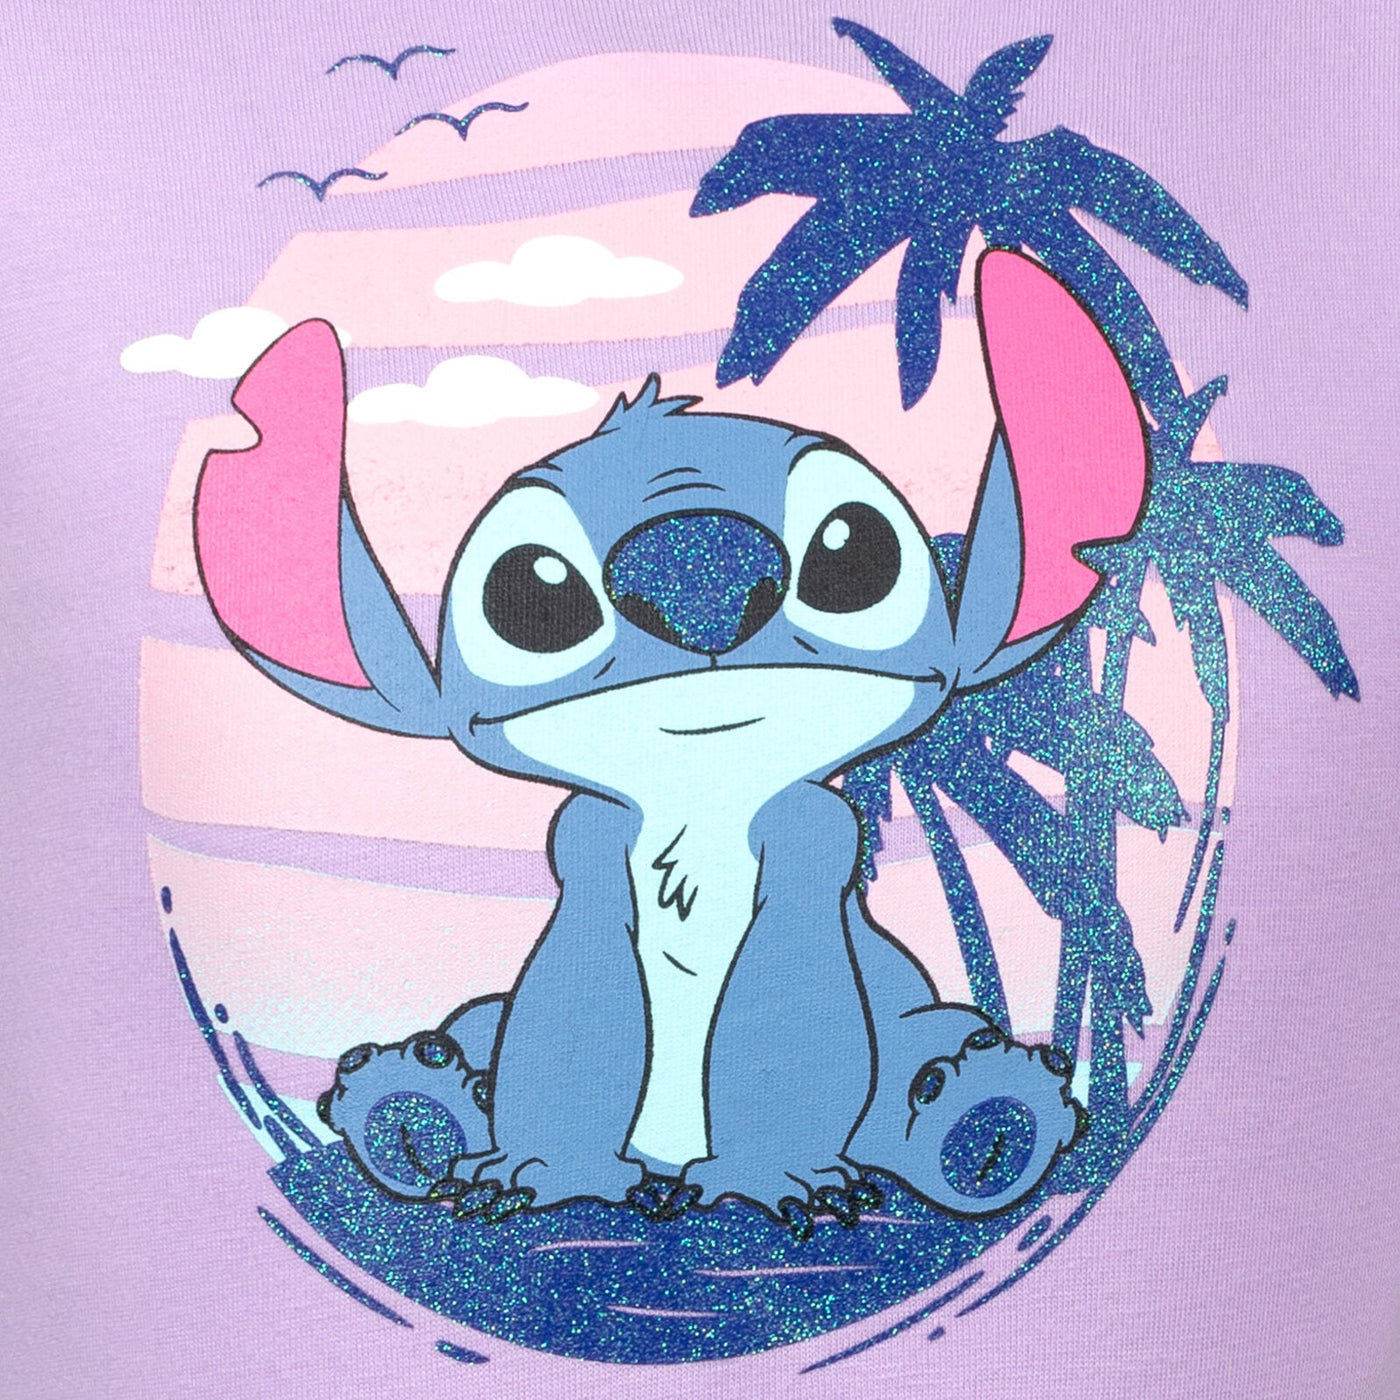 Disney Lilo & Stitch Dress - imagikids